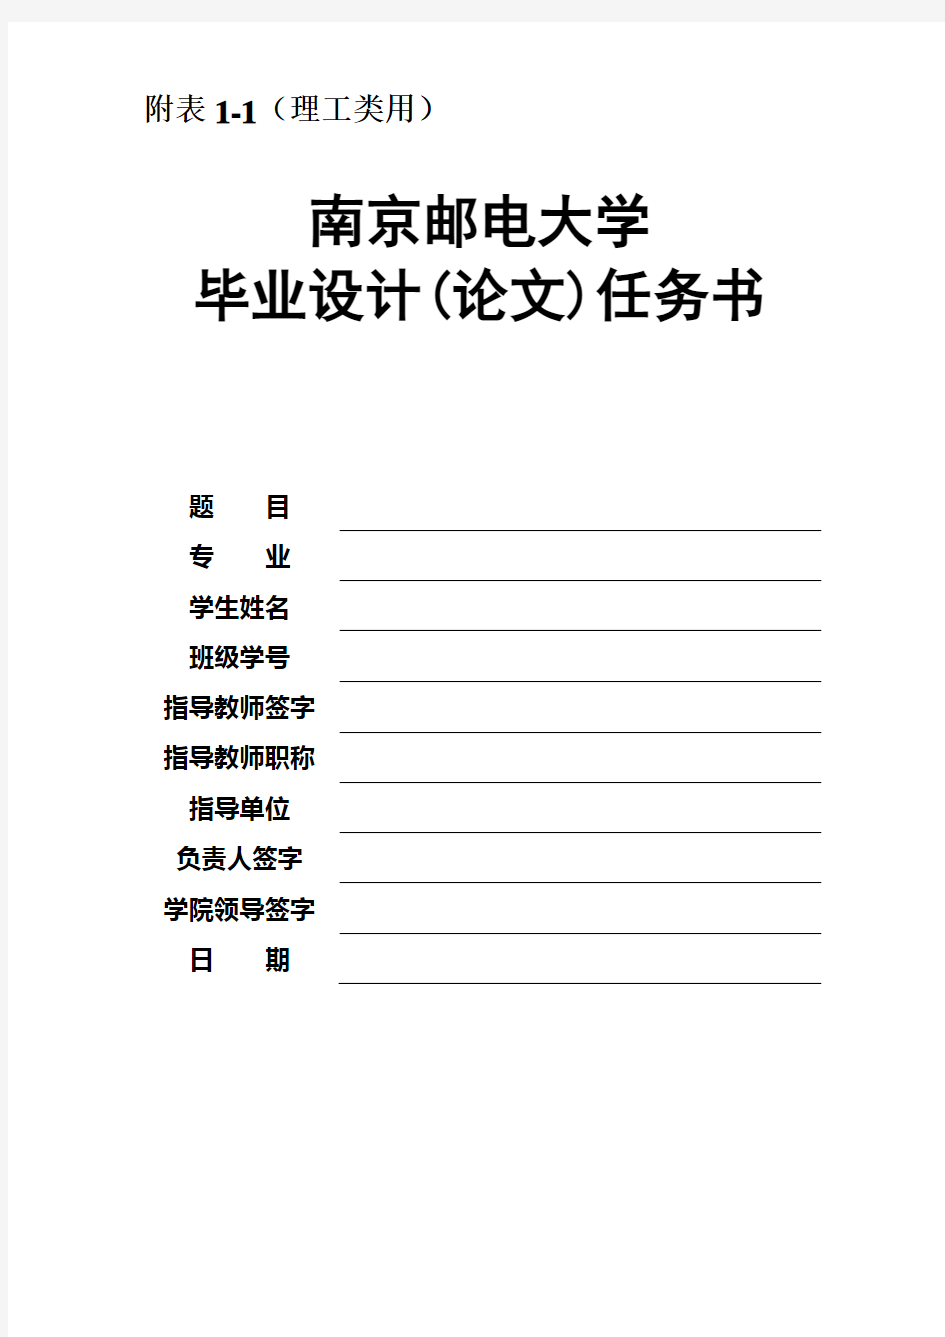 南京邮电大学毕业设计相关表格